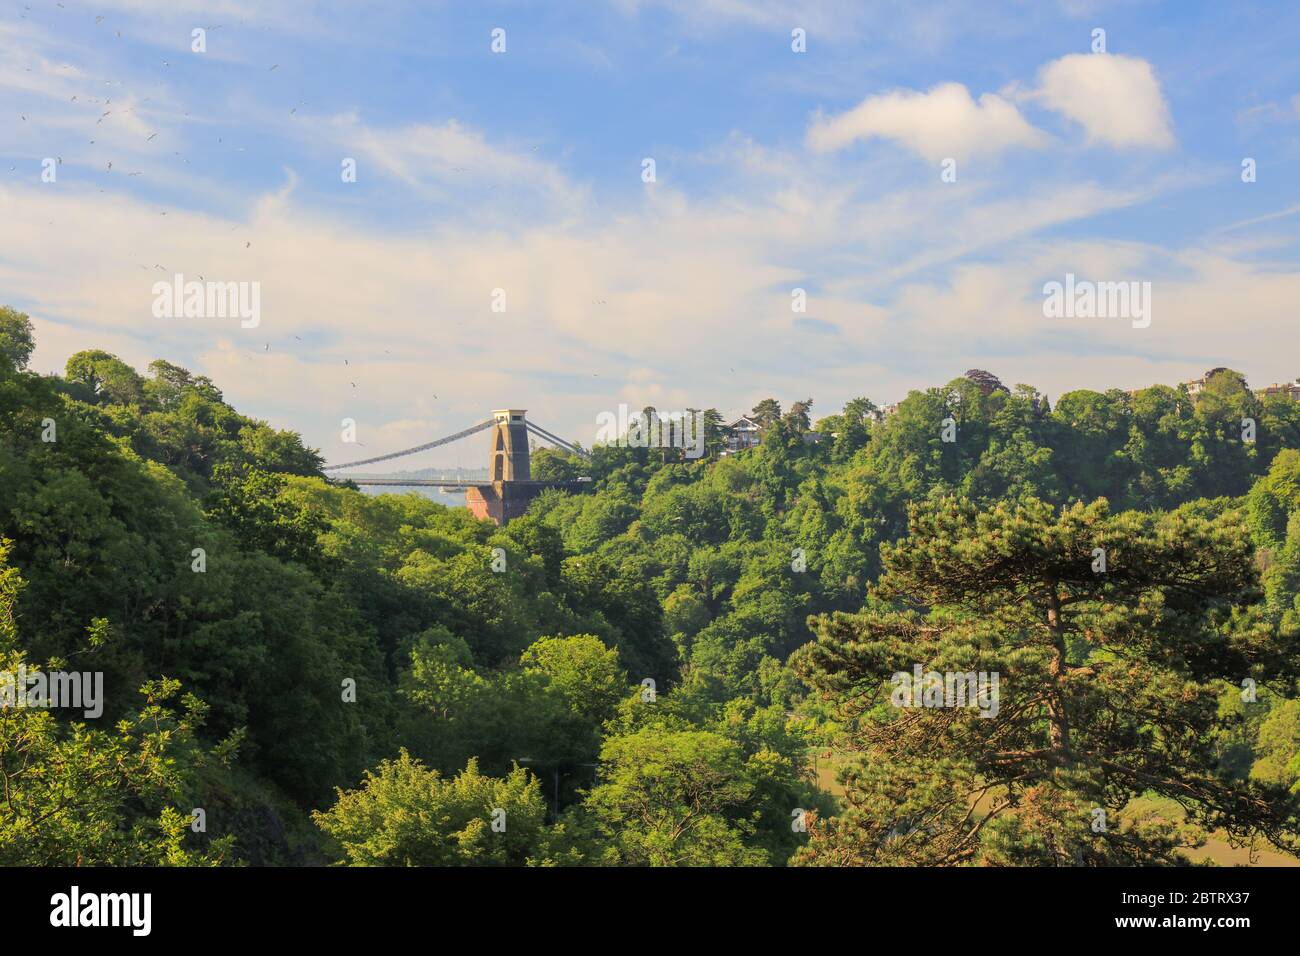 The Avon Gorge with the Clifton Suspension Bridge, Bristol, England Stock Photo